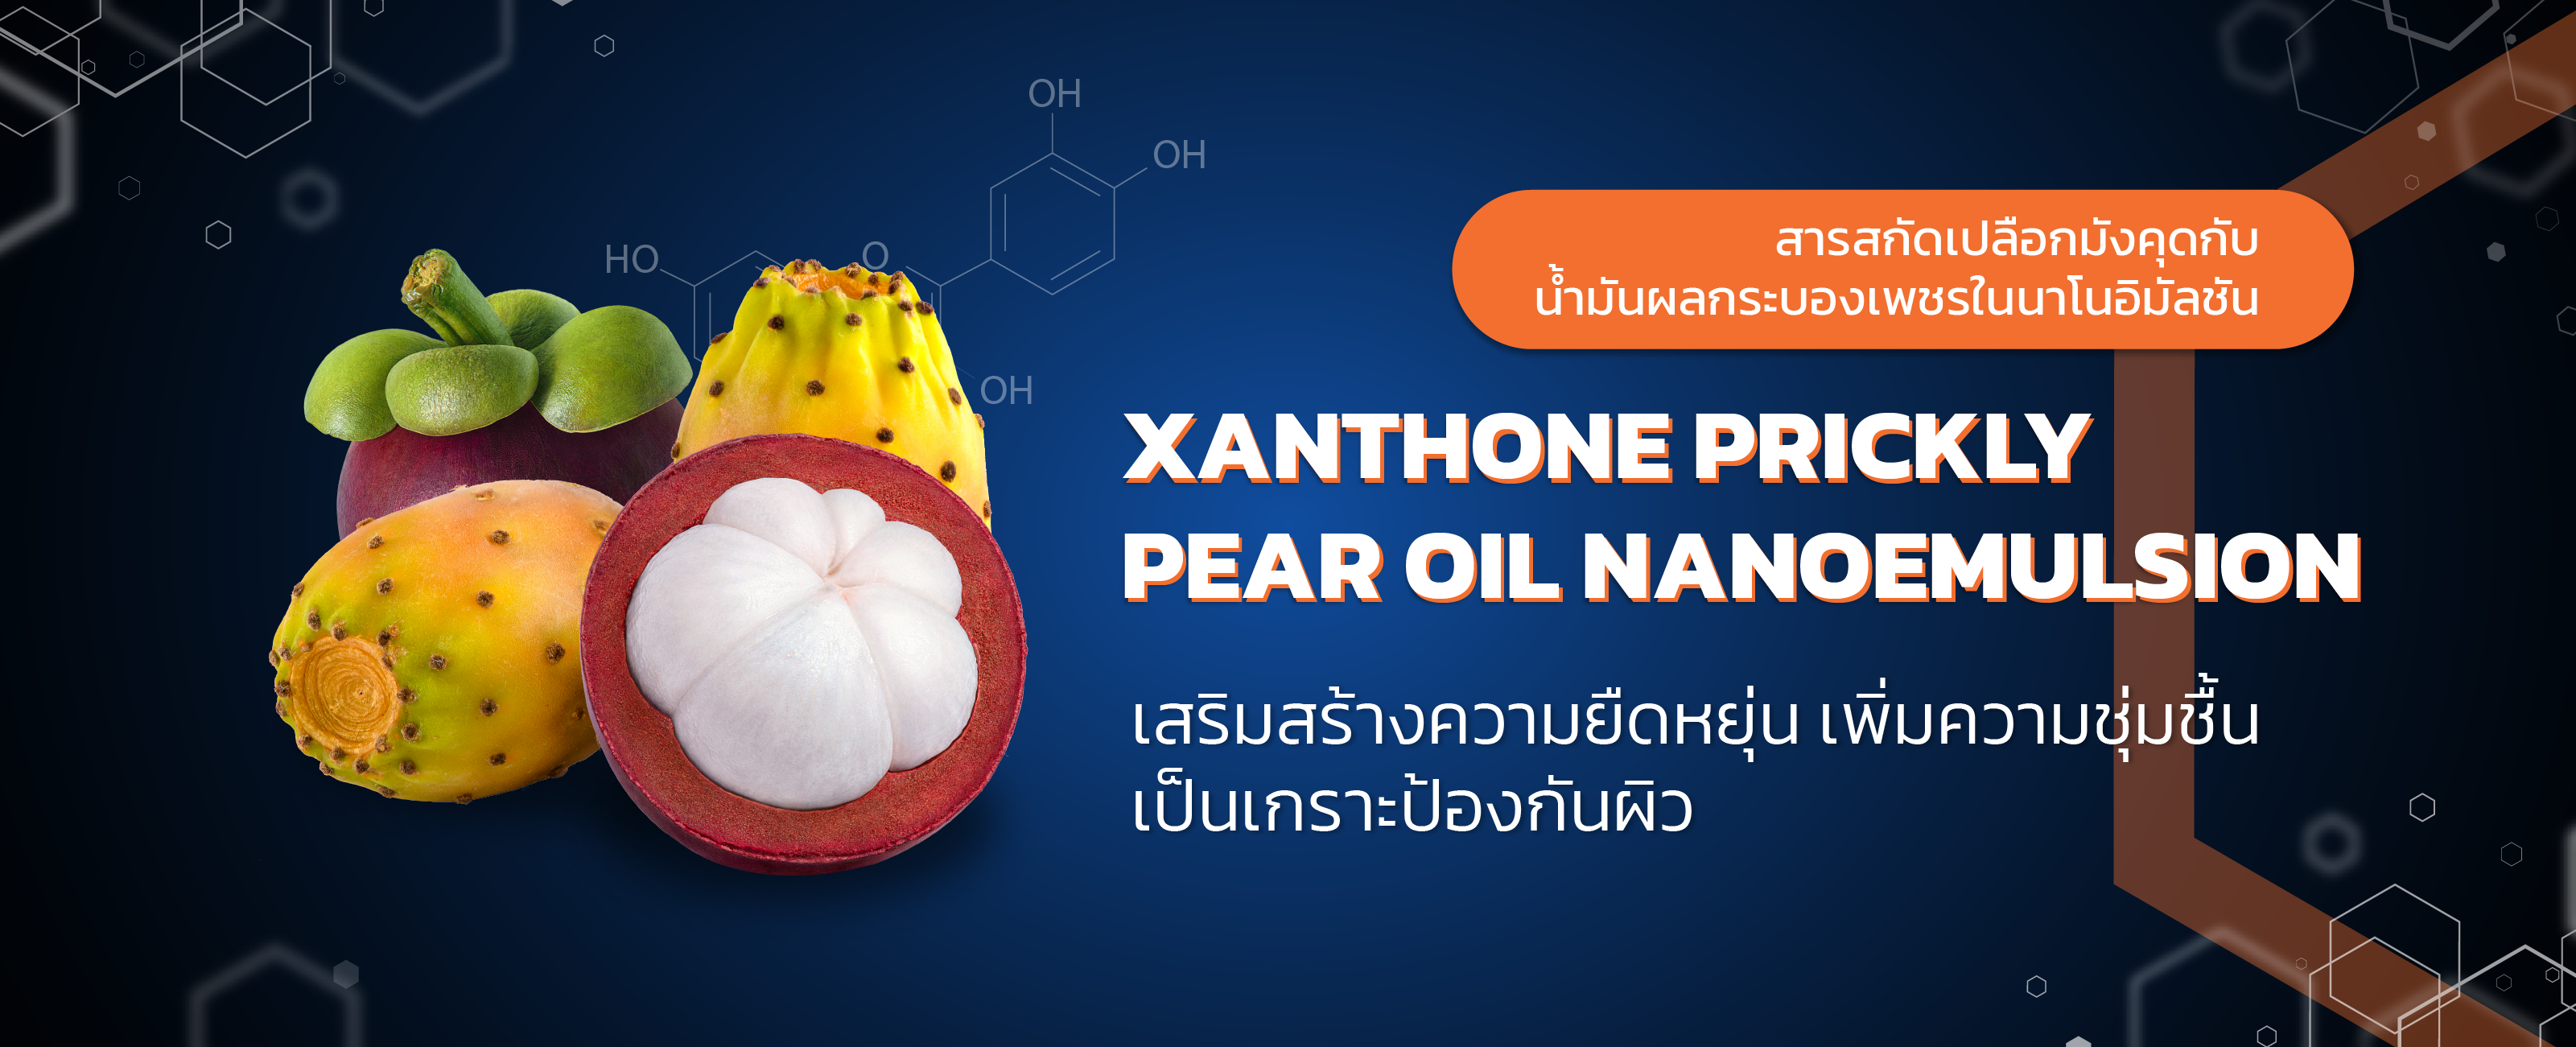 สารสกัดเปลือกมังคุดกับน้ำมันผลกระบองเพชรในนาโนอิมัลชัน (Xanthone Prickly Pear Oil Nanoemulsion)